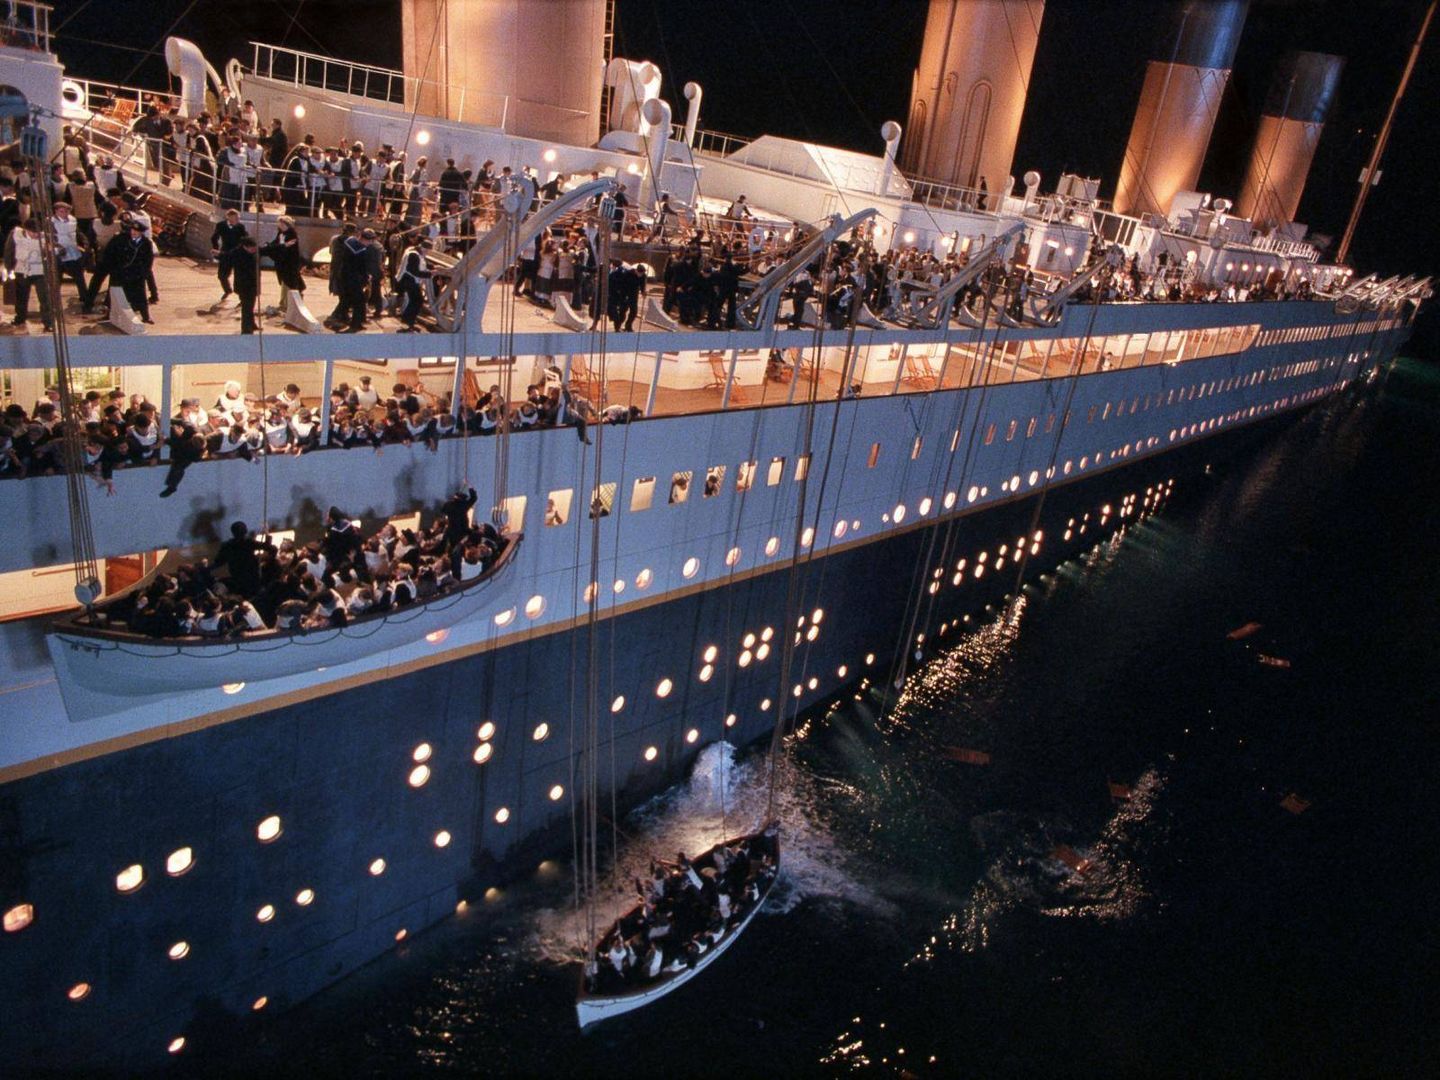 Los pasajeros abandonan el Titanic tras chocar con un iceberg.